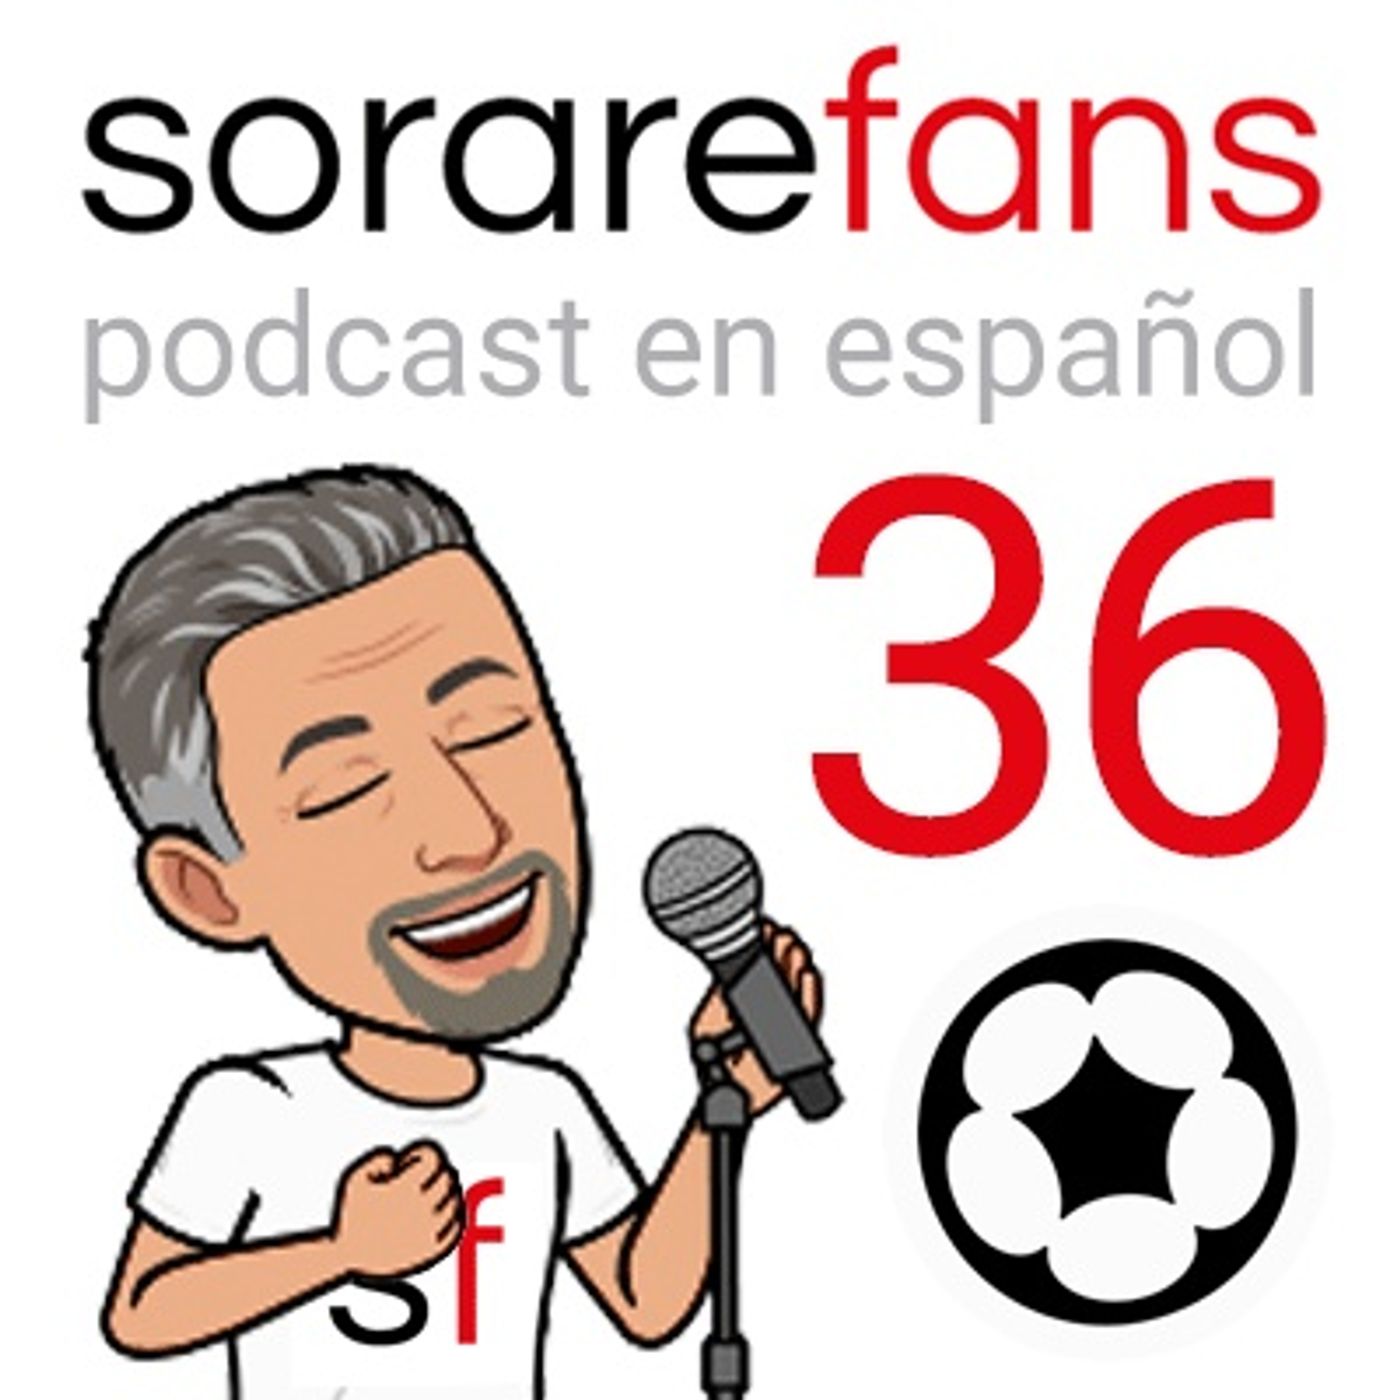 Podcast Sorare Fans 36. Cómo quedar en el podium de Specialist SR con Jamelo